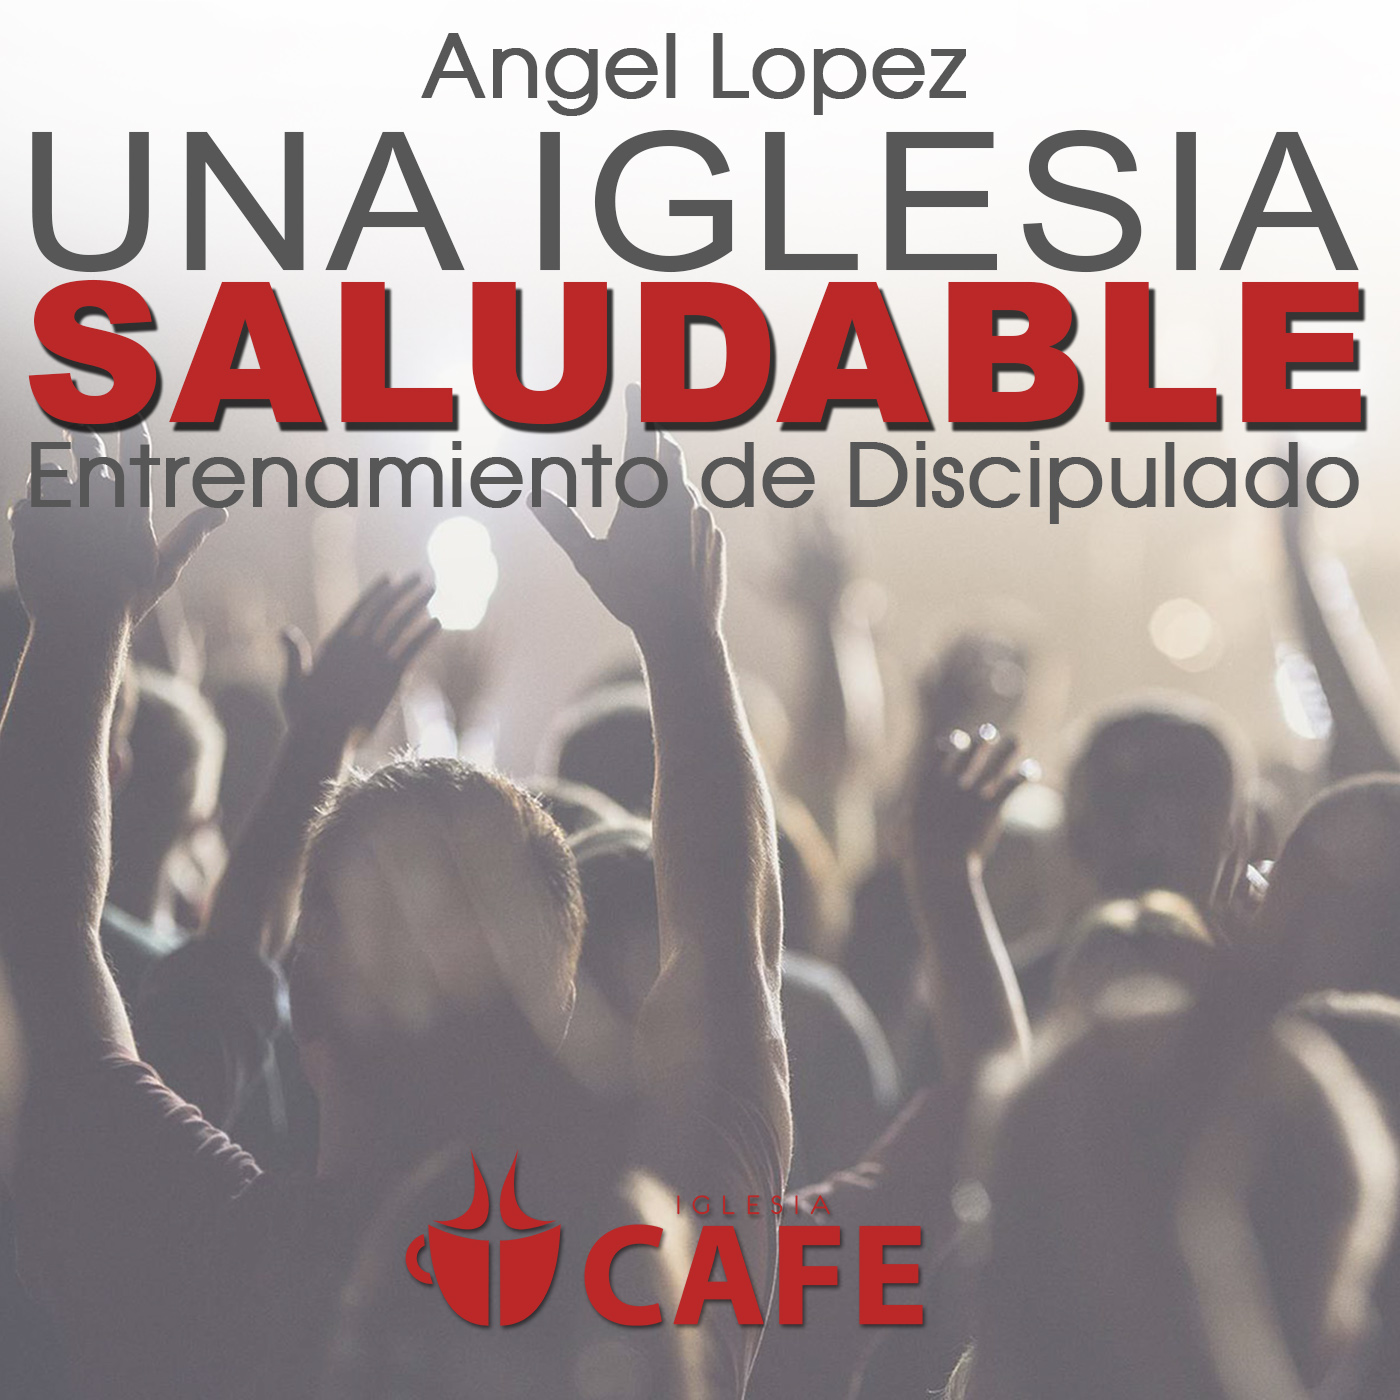 4) Angel Lopez - La Urgencia del Espiritu Santo en la Iglesia